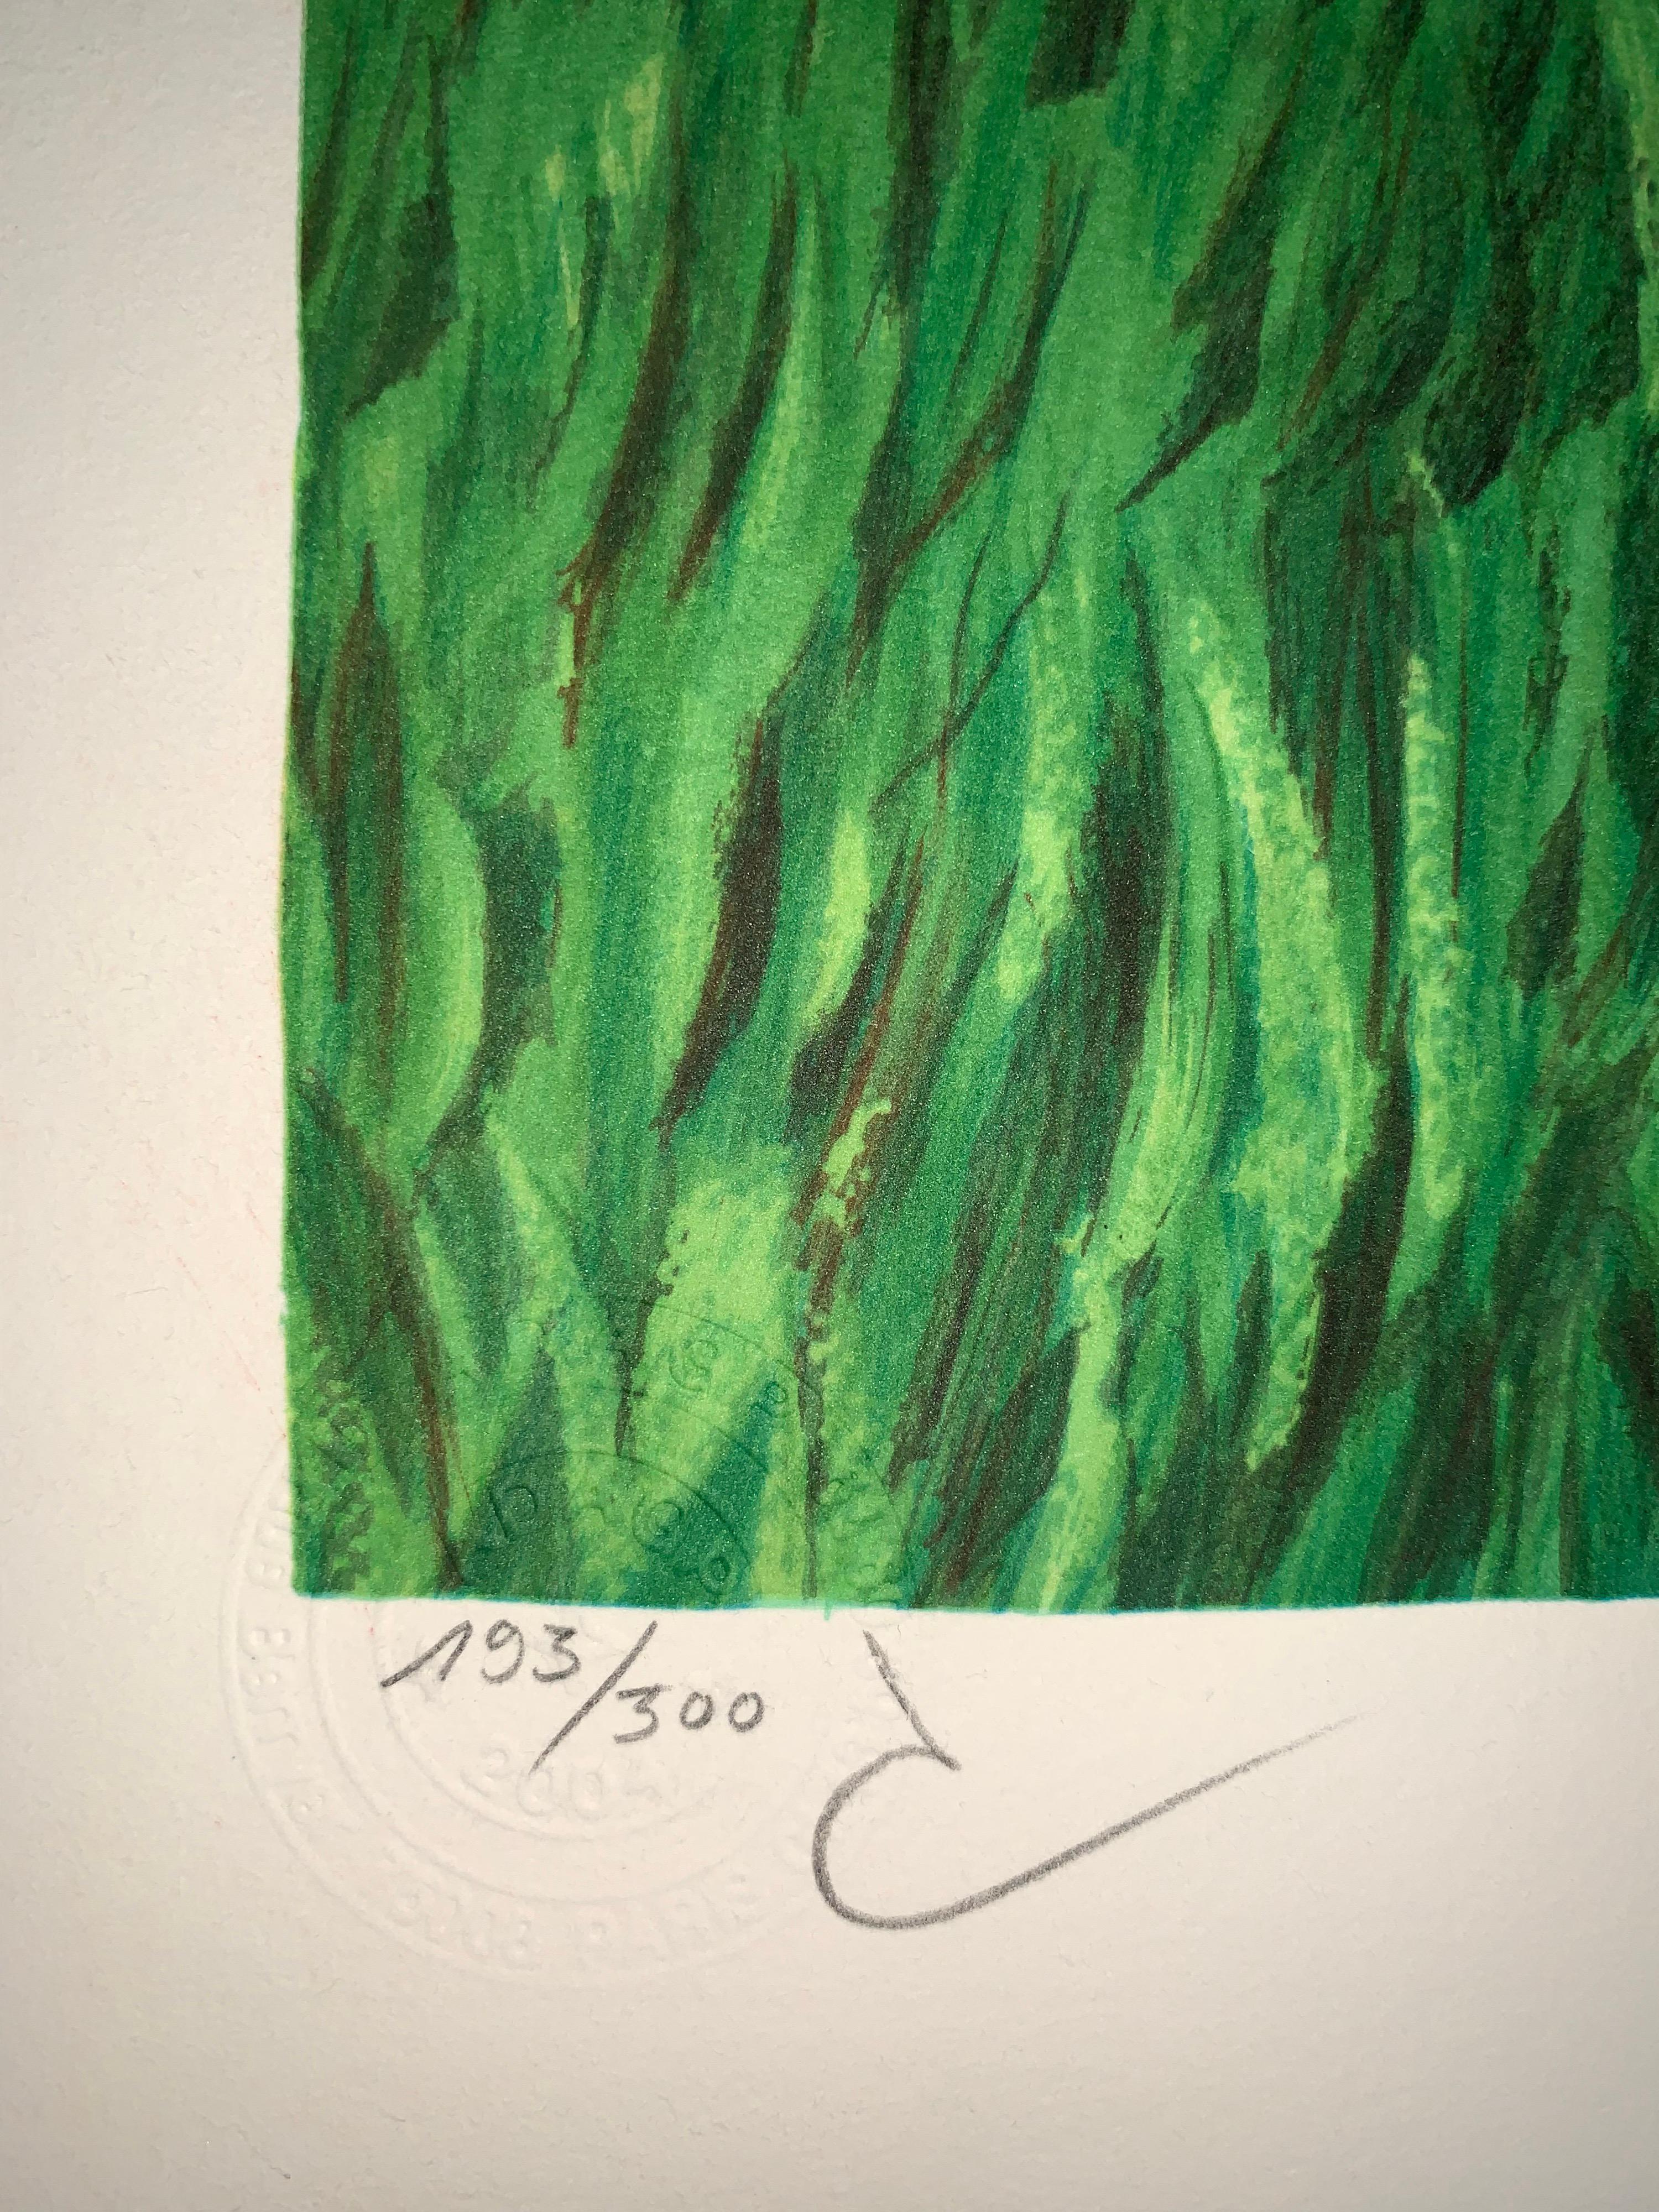 Numéroté : 193/300
Lithographie en couleur d'après l'huile sur toile de René Magritte de 1931, signature imprimée de Magritte et numérotée de l'édition de 300. 
La lithographie porte les cachets secs de la Fondation Magritte et de l'ADAGP et est